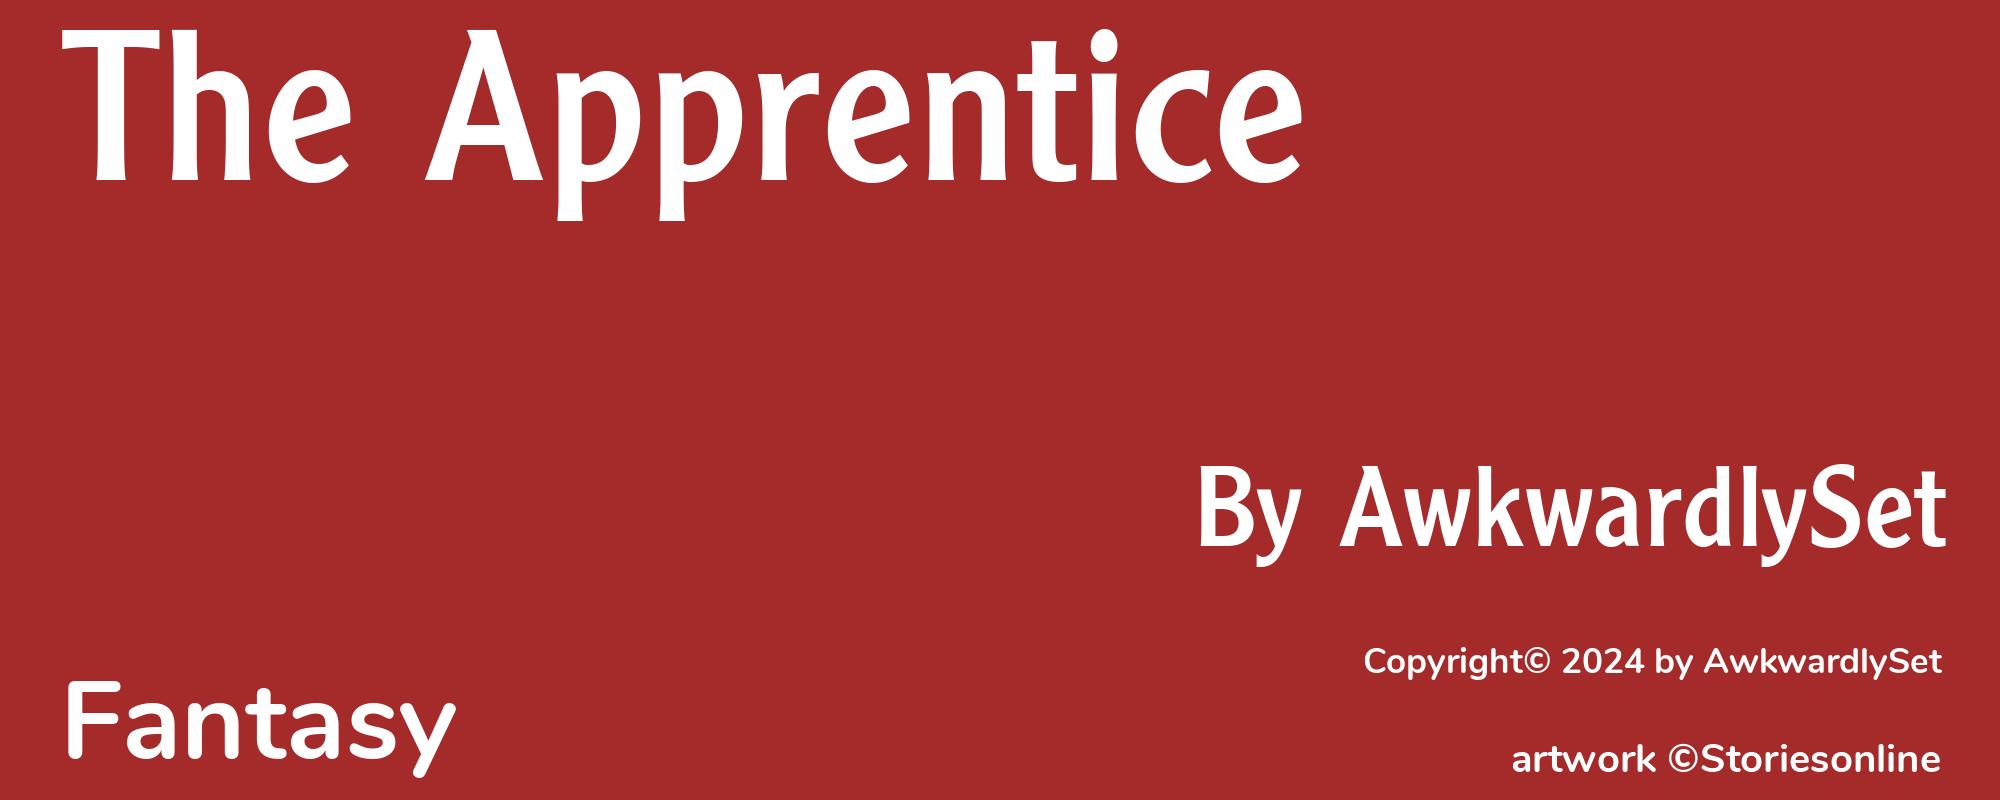 The Apprentice - Cover